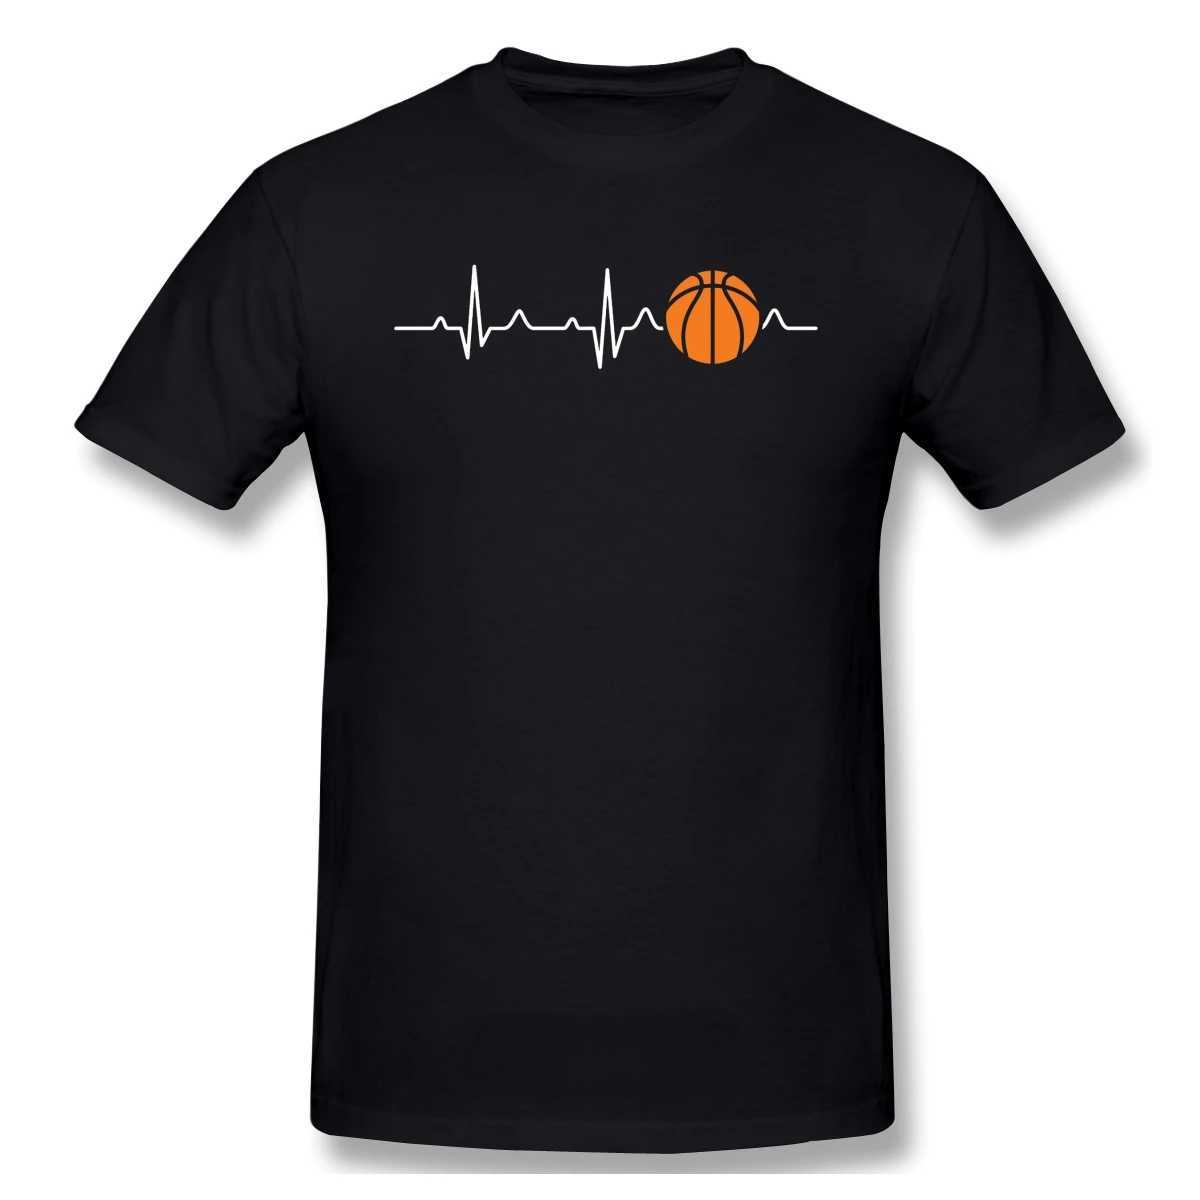 T-shirt maschile uomini abbigliamento da basket maglietta cardiaco da uomo regali di compleanno di compleanno cortometrali